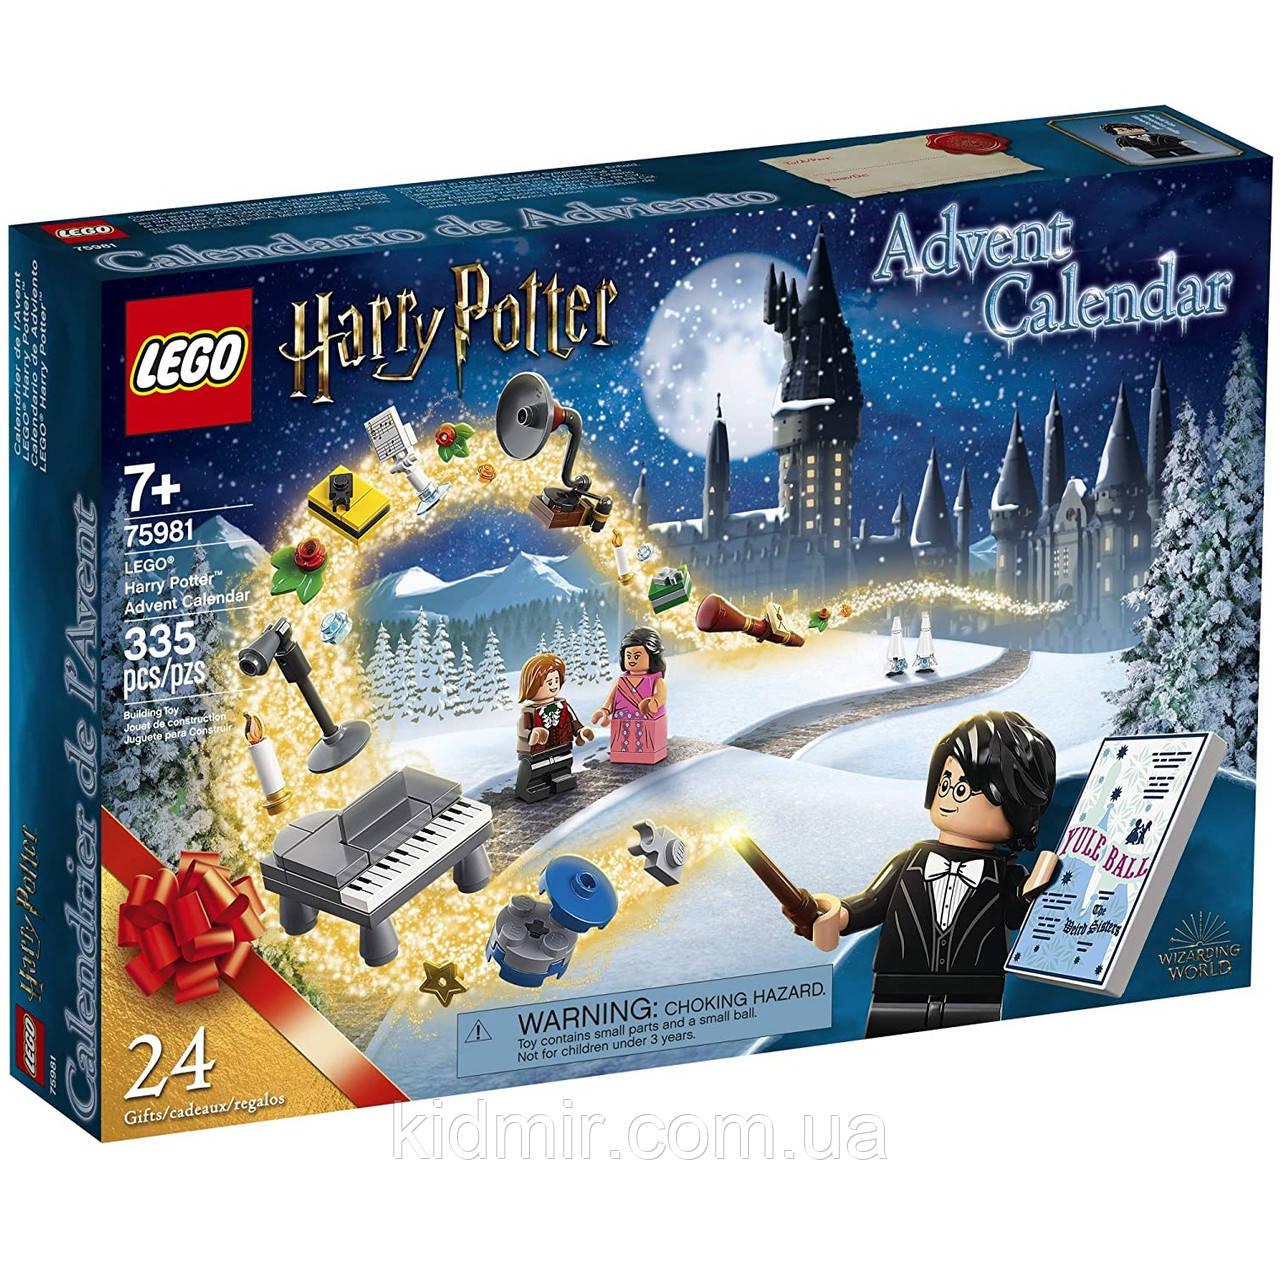 Конструктор LEGO Harry Potter 75981 Новорічний календар